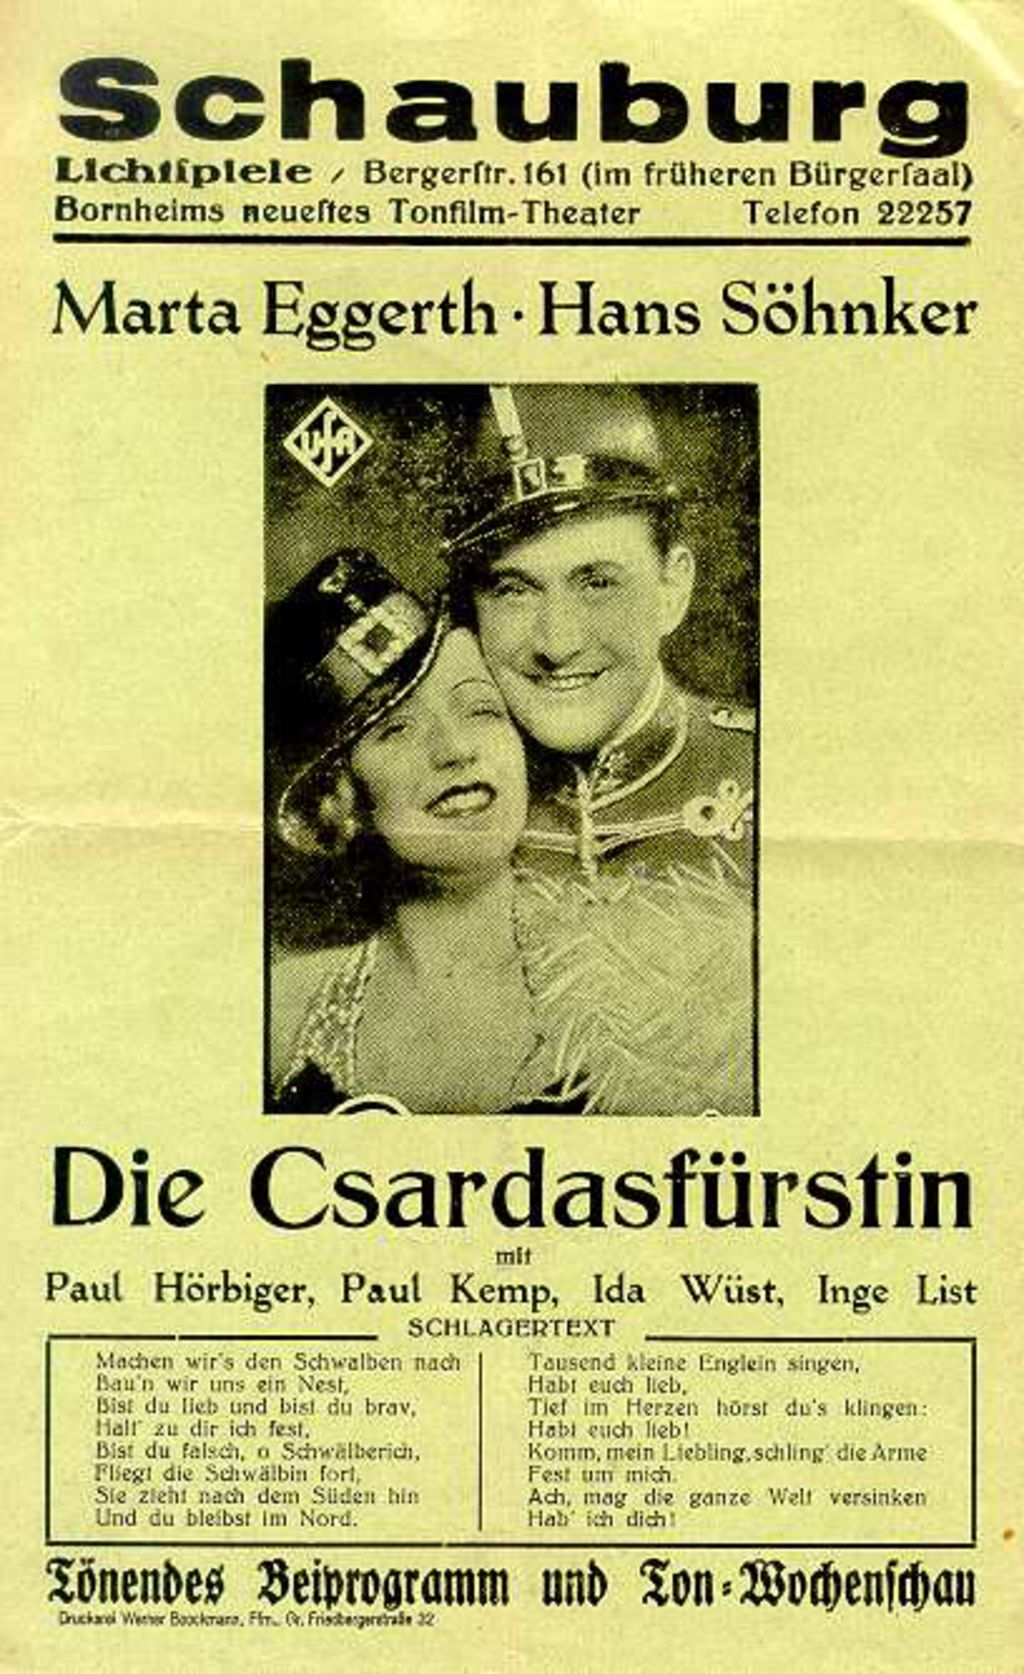 Exponat: Druckschrift: Kinowerbezettel für den Film "Die Csardasfürstin", um 1930